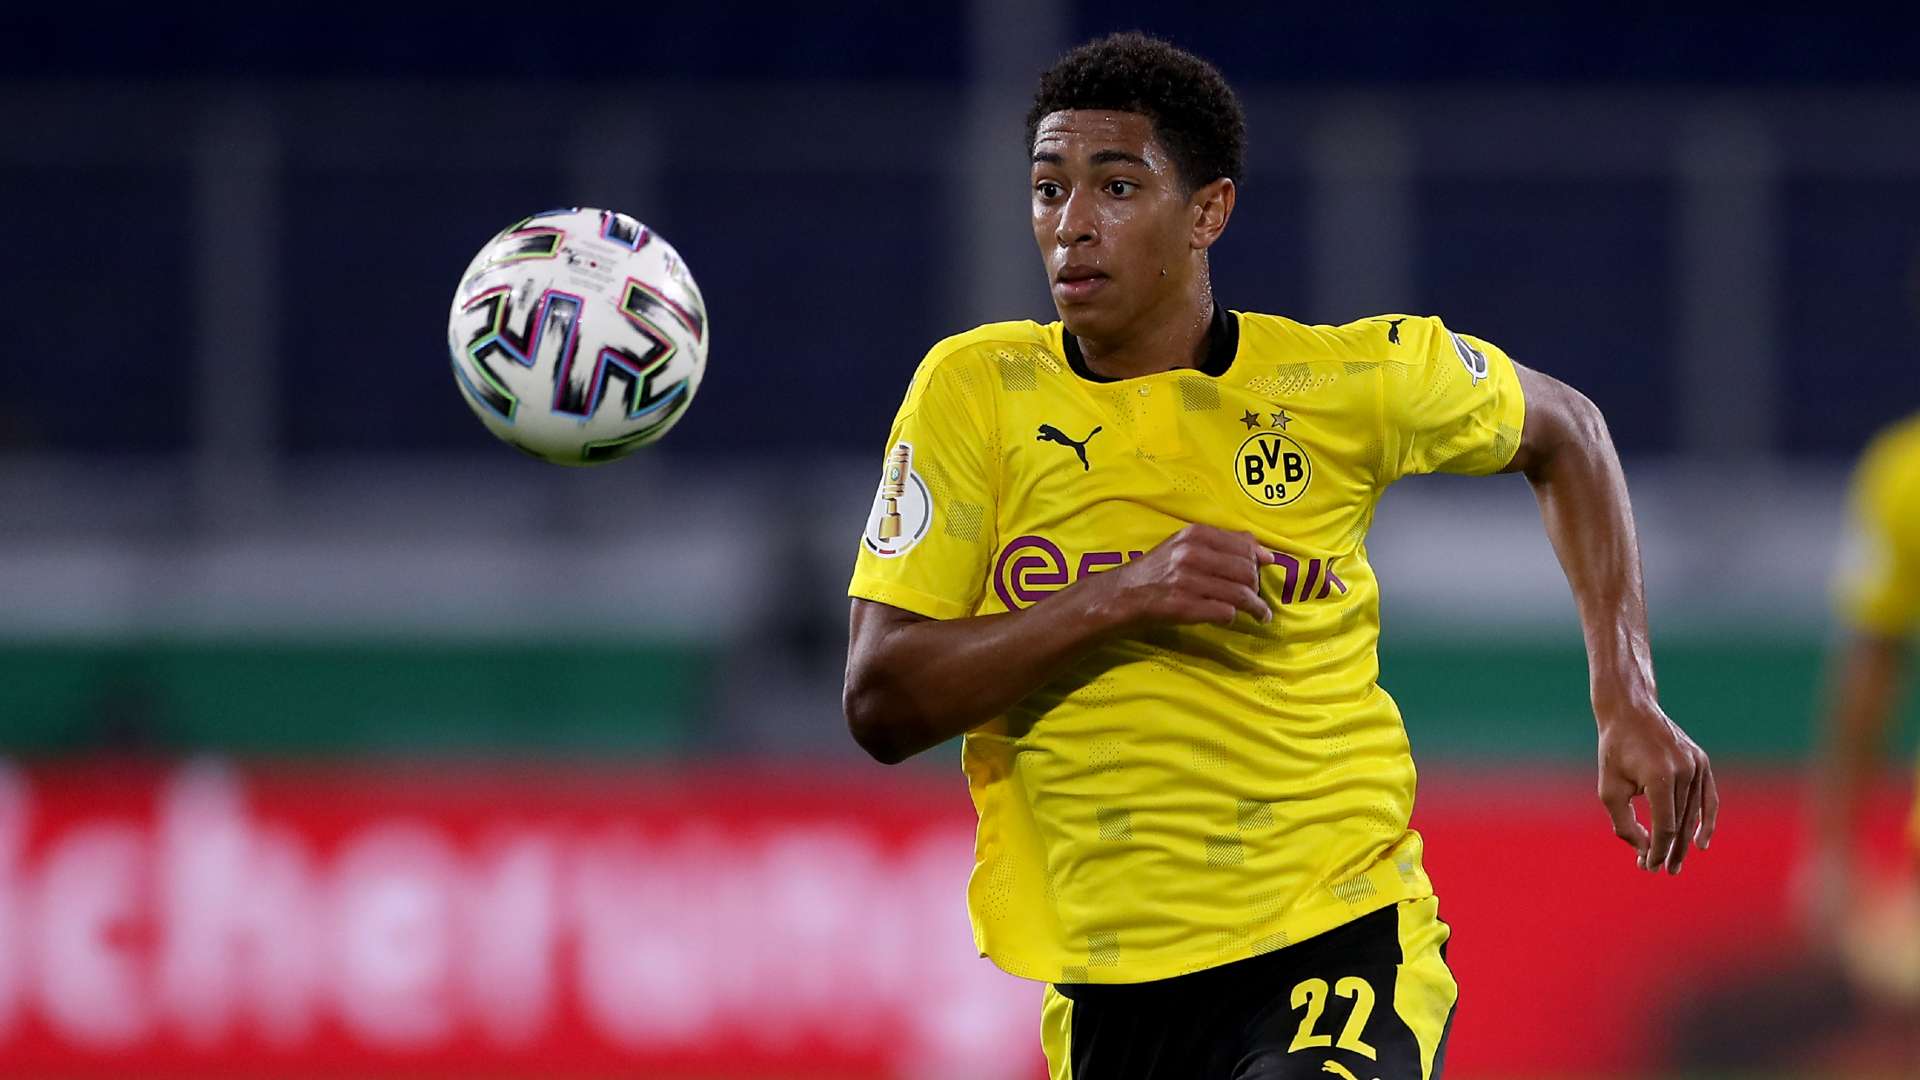 Đã thể hiện tài năng ở Dortmund, giờ là lúc chàng trai 17 tuổi Bellingham chứng tỏ năng lực trong màu áo đội tuyển Anh.